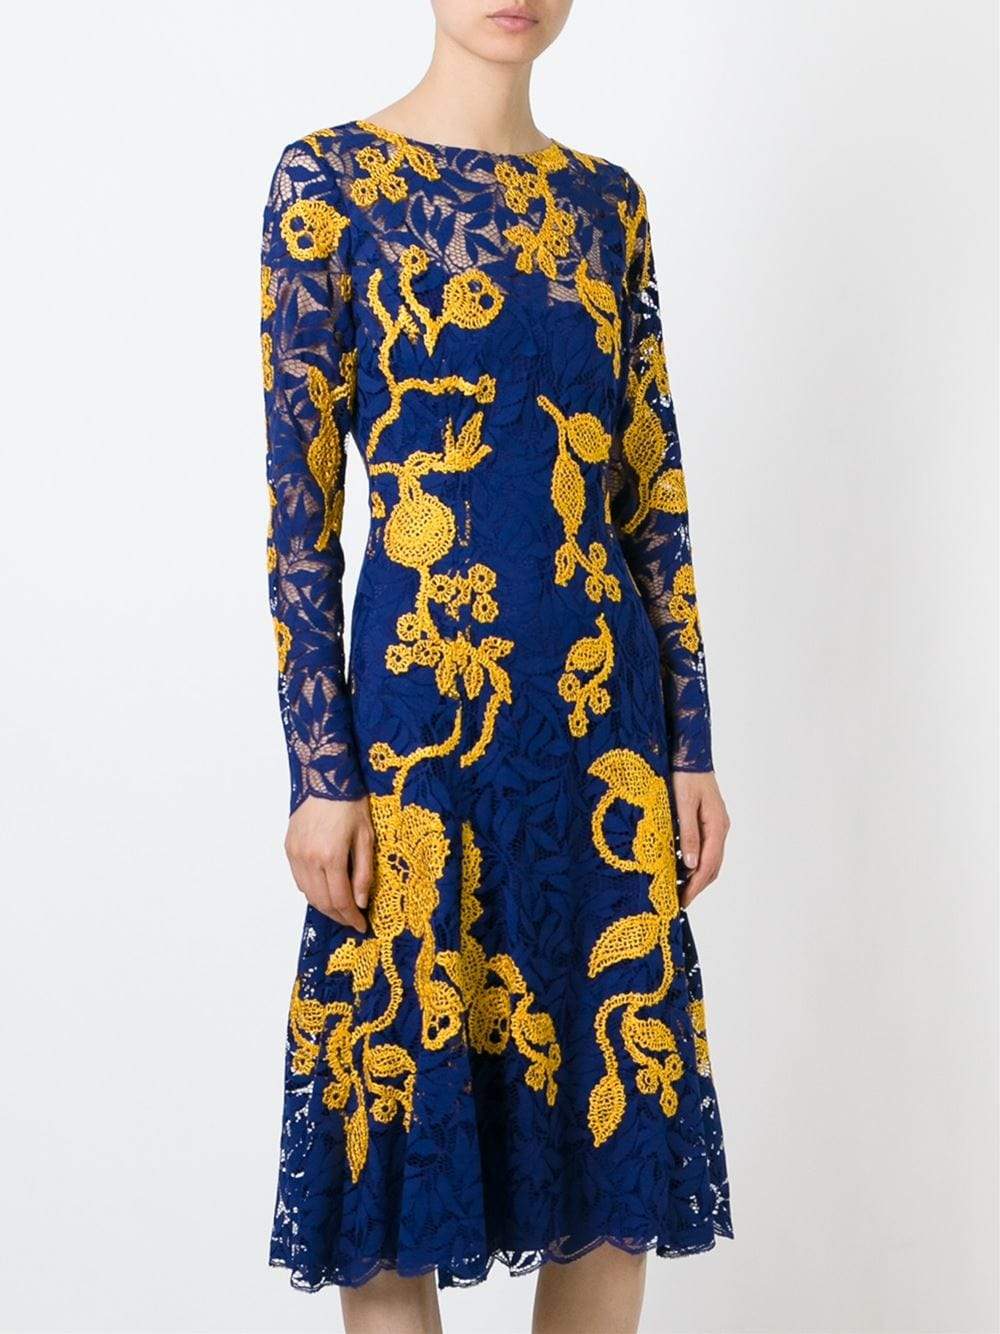 OSCAR DE LA RENTA-Fern Lace Dress-